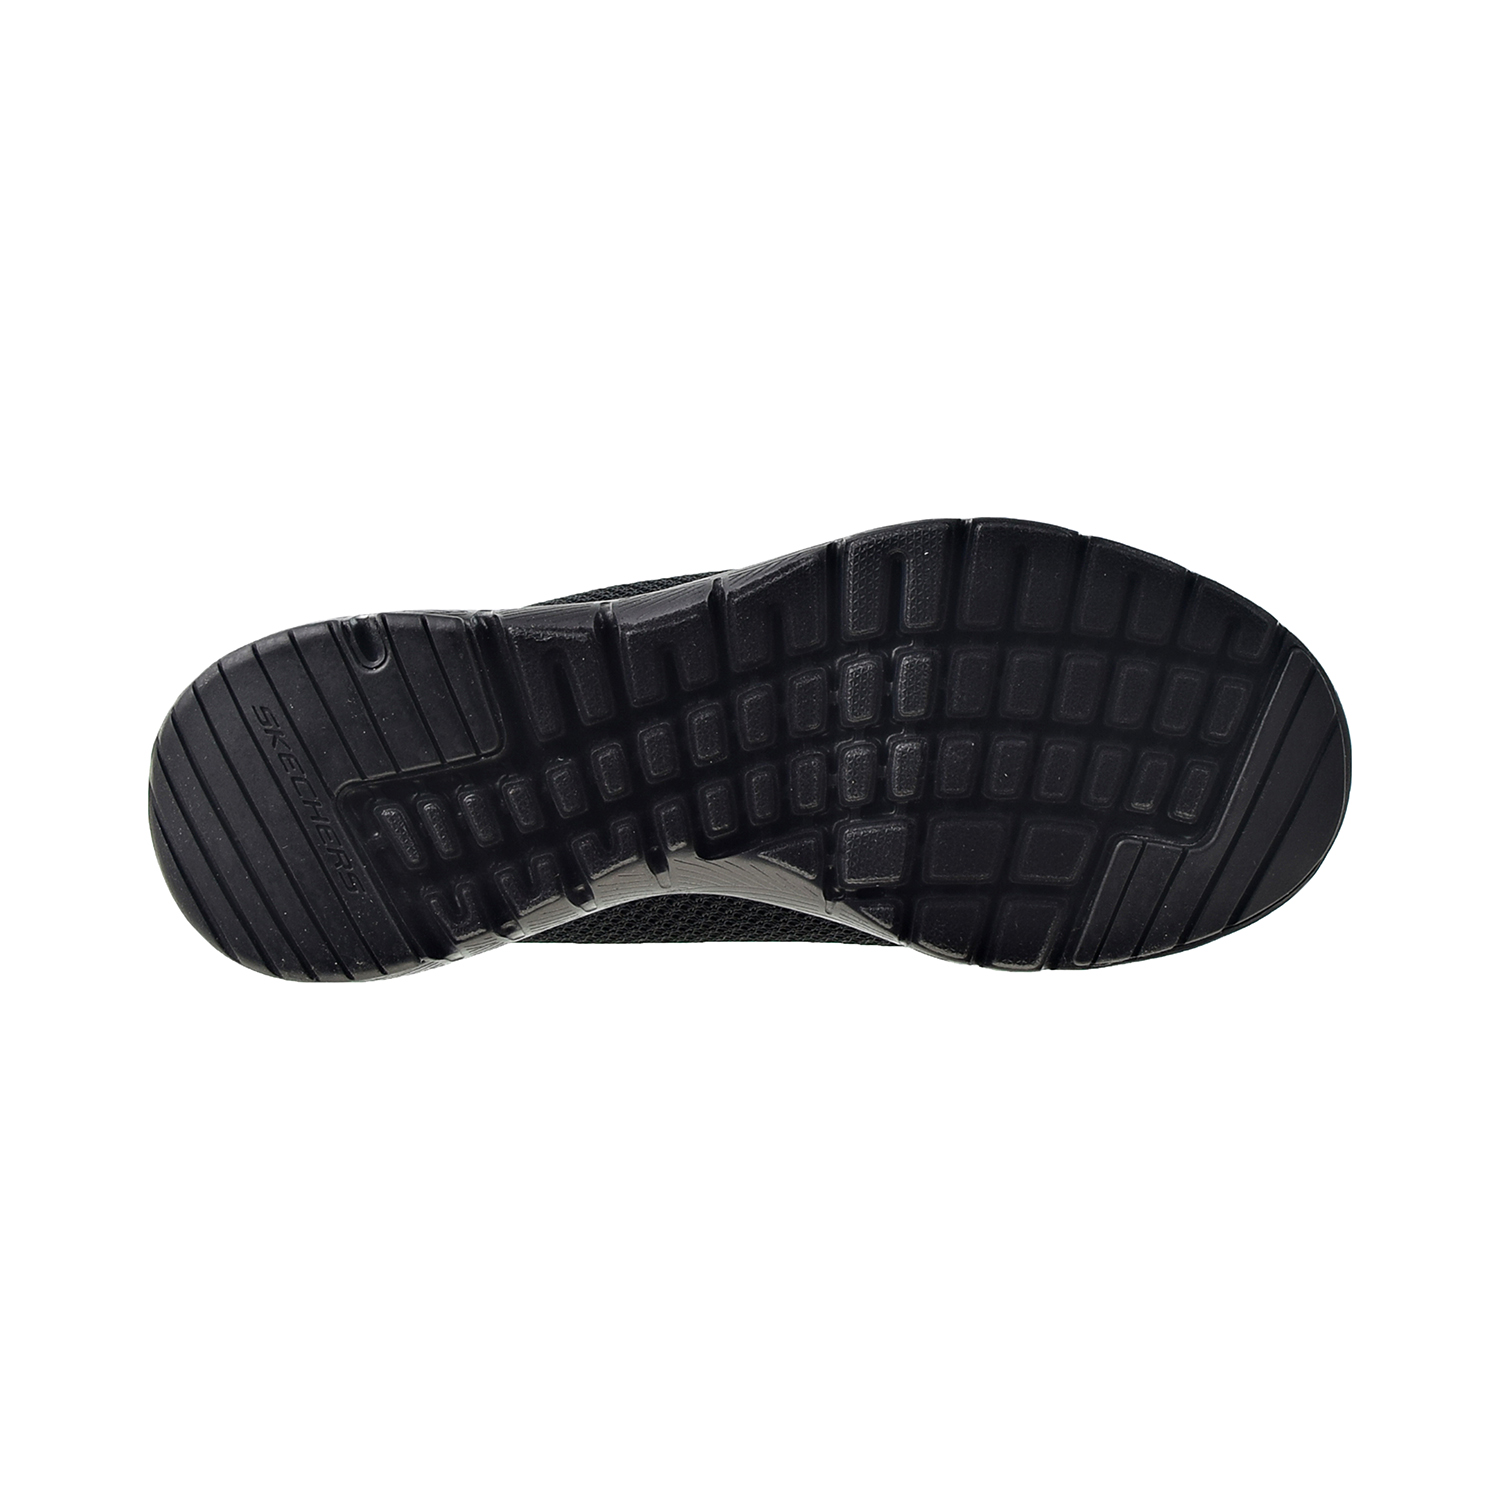 Skechers Flex Appeal 3.0 First Insight Women's Shoes Black 13070-bbk